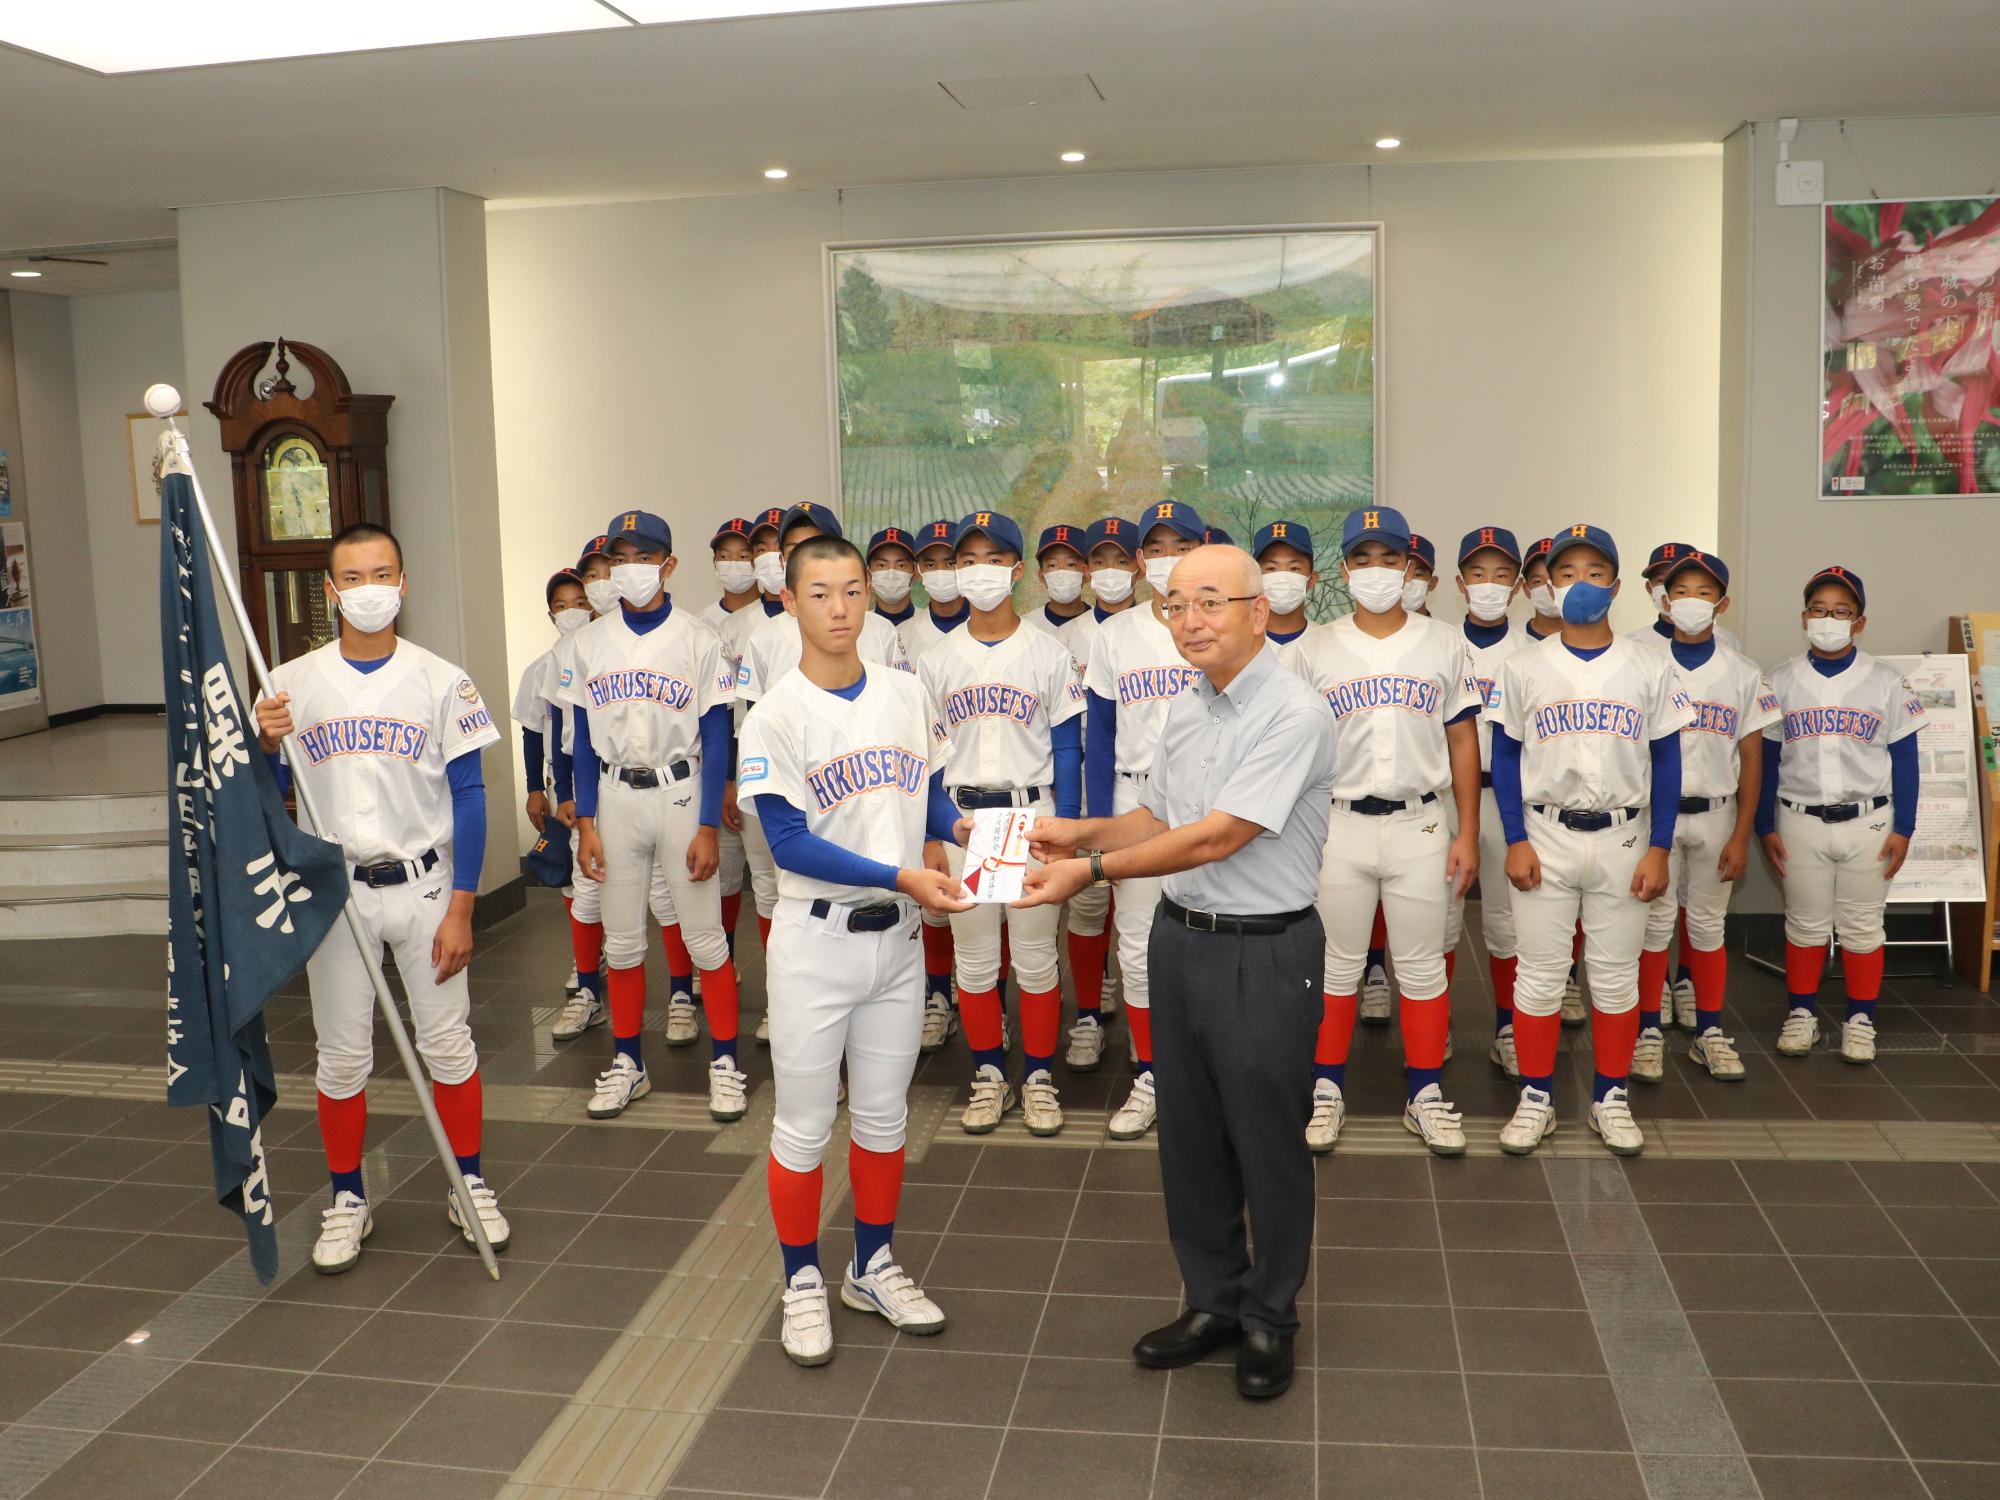 野球のユニフォームを着たシニアチームの子どもが、市長から奨励金をもらっている。後ろにチームメイトたちが立っている